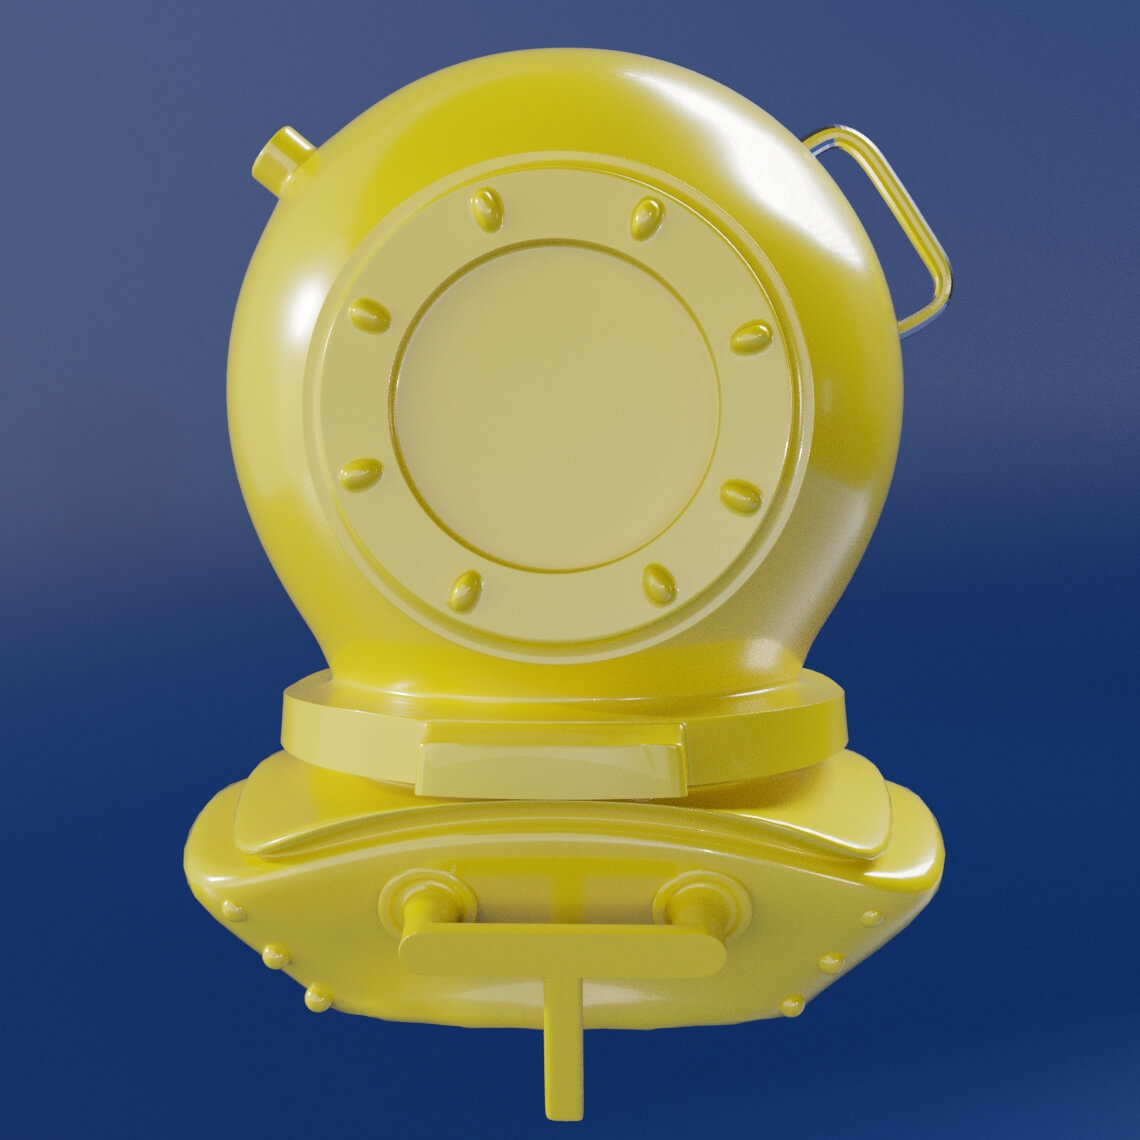 Capacete de mergulhador em 3D, com o acabamento de material  brilhoso que representa um plástico em cor amarela.